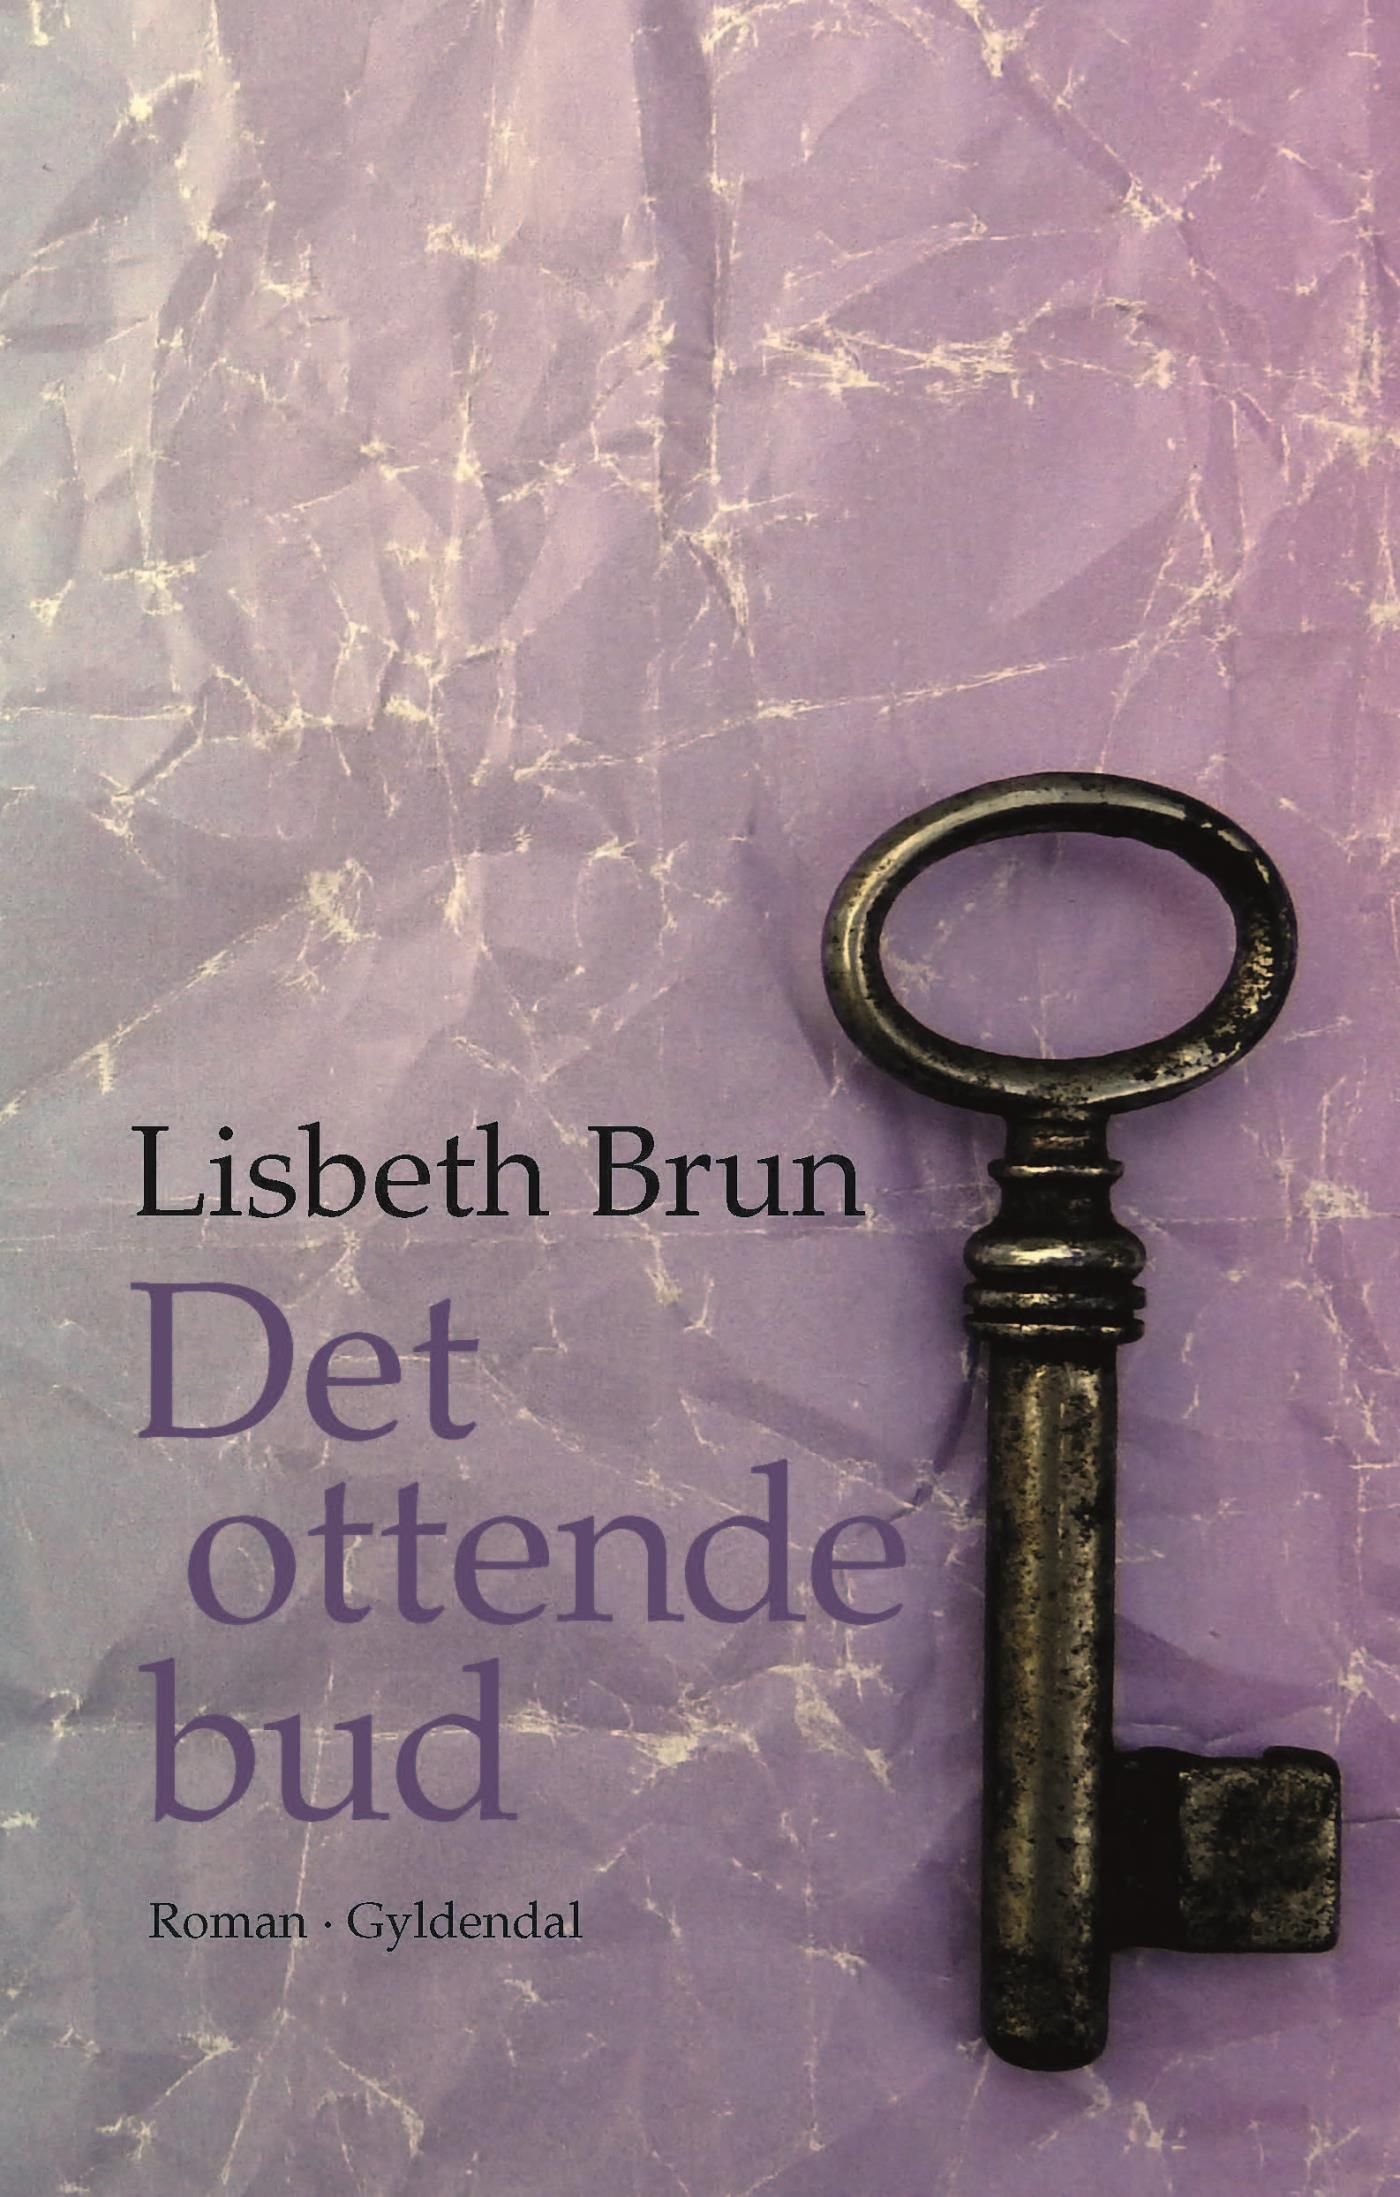 Det ottende bud, e-bok av Lisbeth Brun